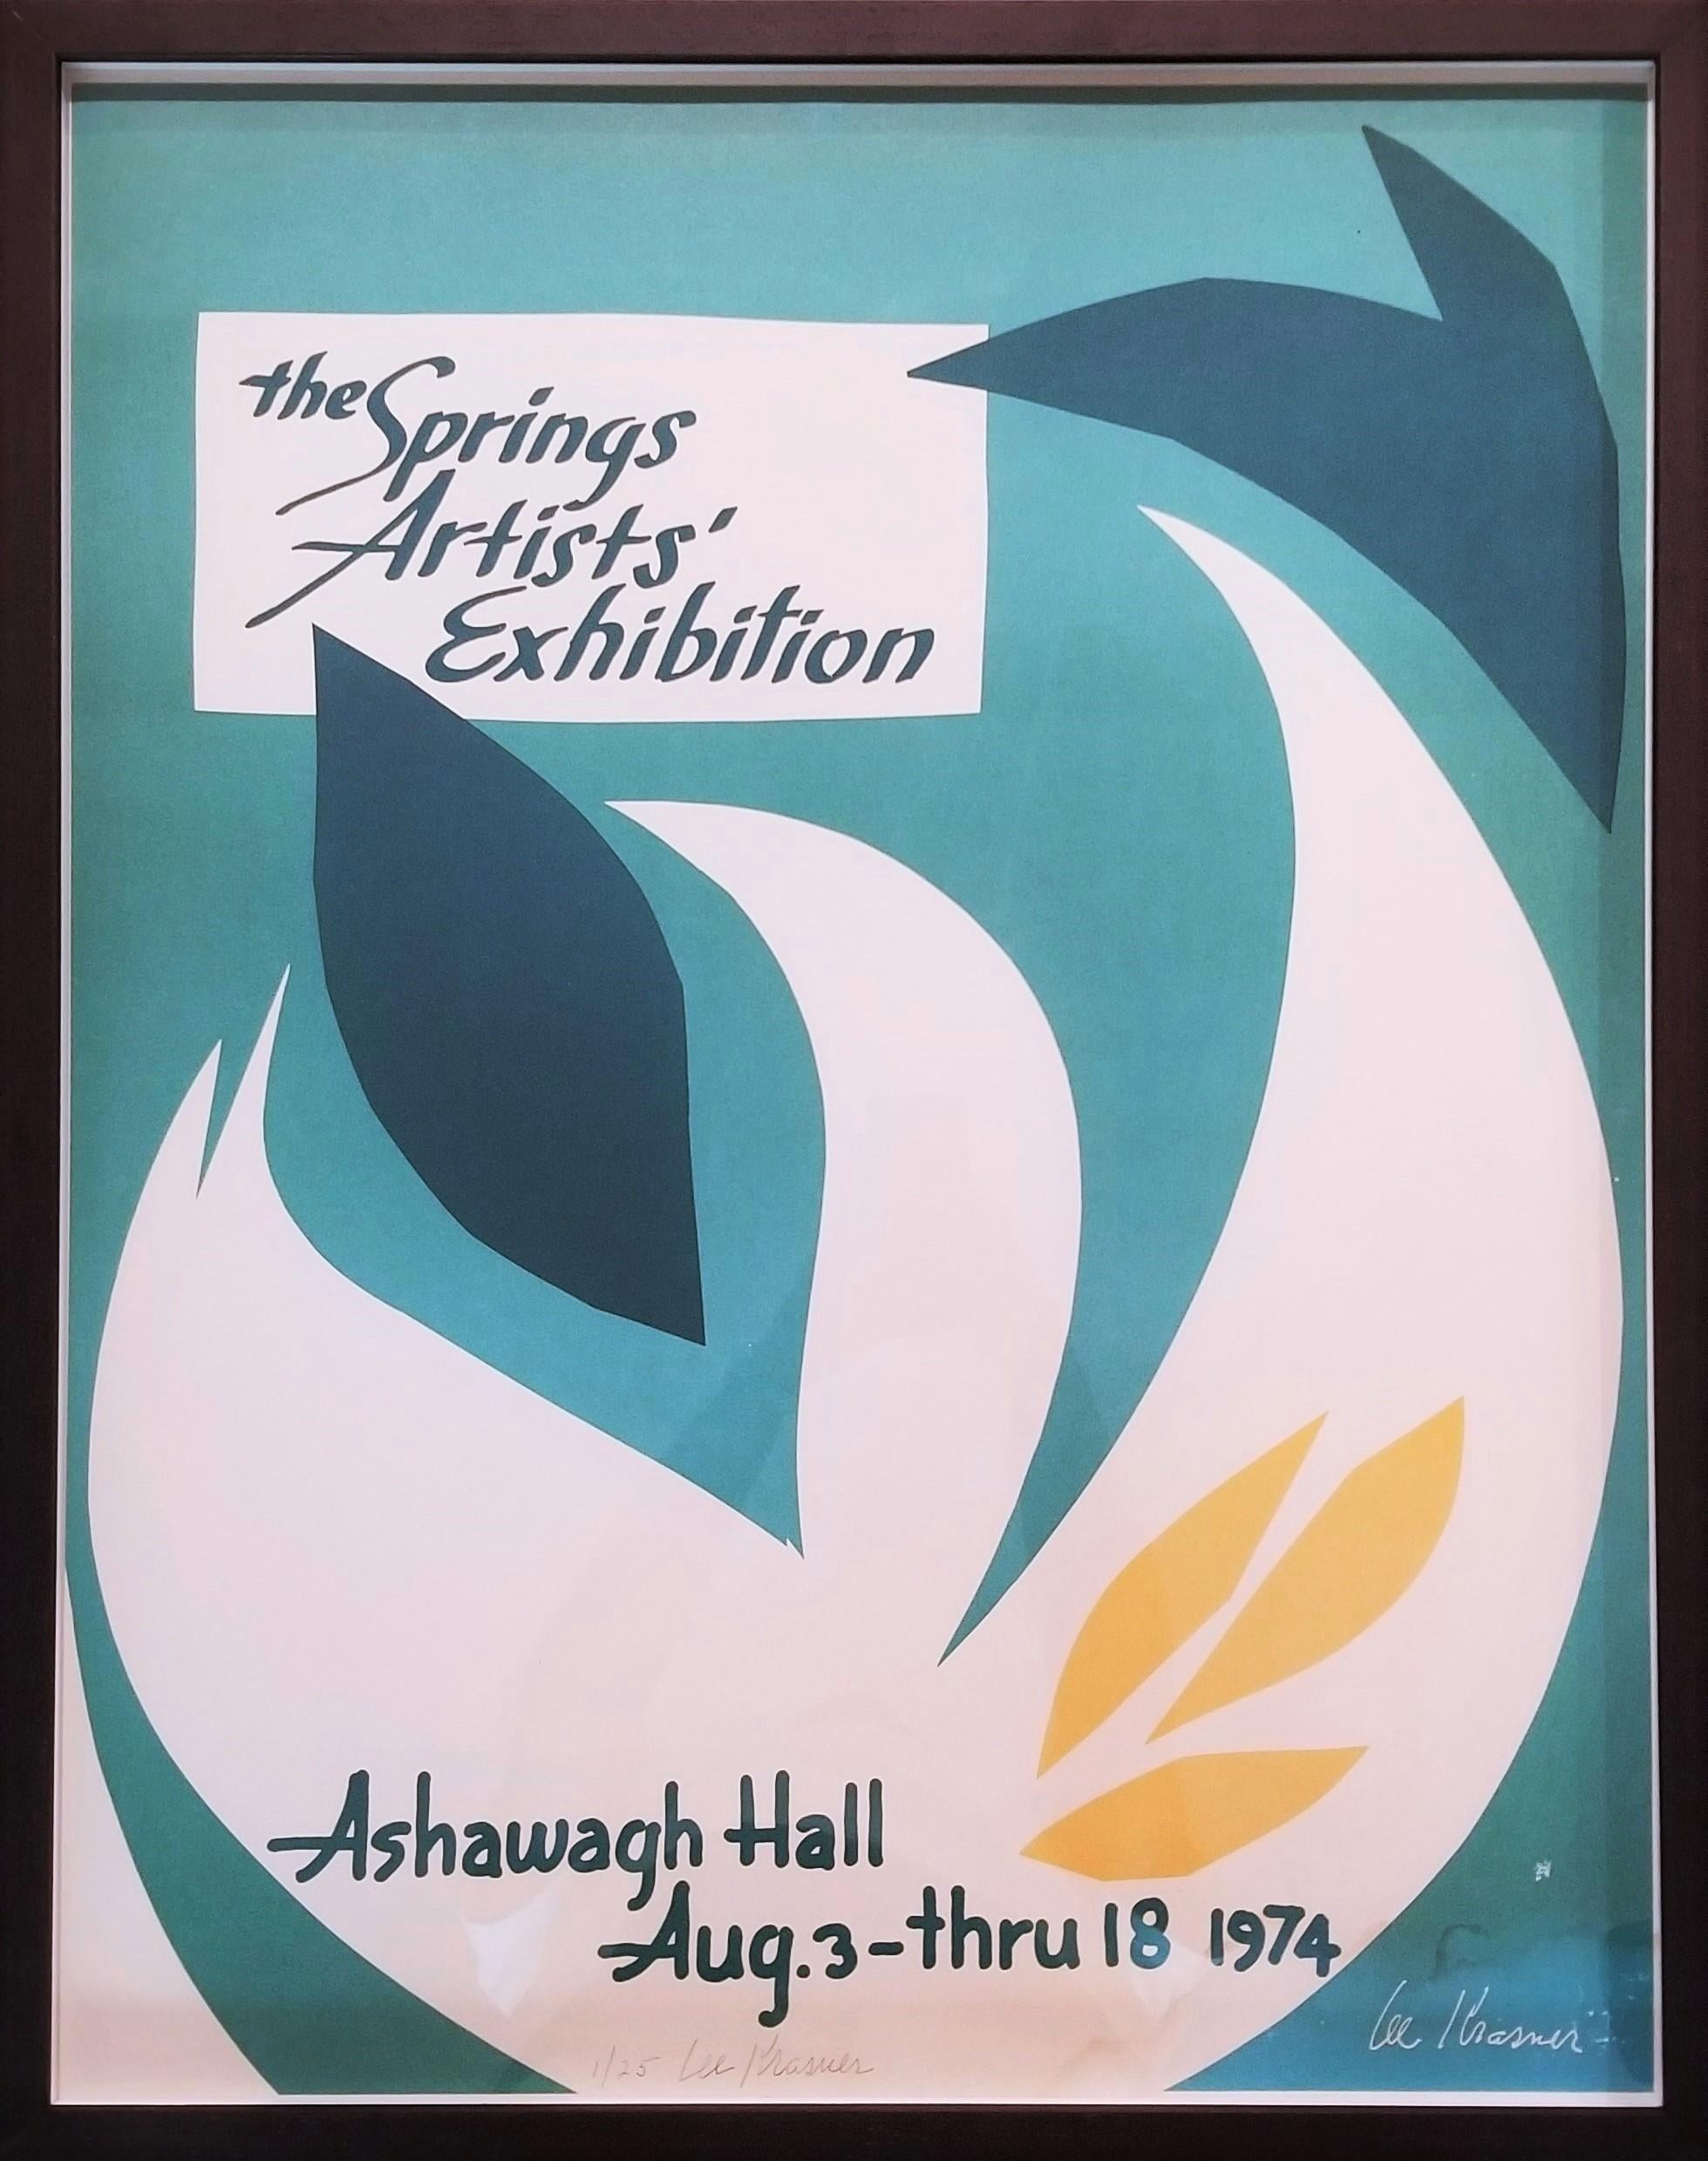 Ashawagh Hall: The Springs Artists' Exhibition Poster (Signiert) /// Female Artist (Abstrakt), Print, von Lee Krasner